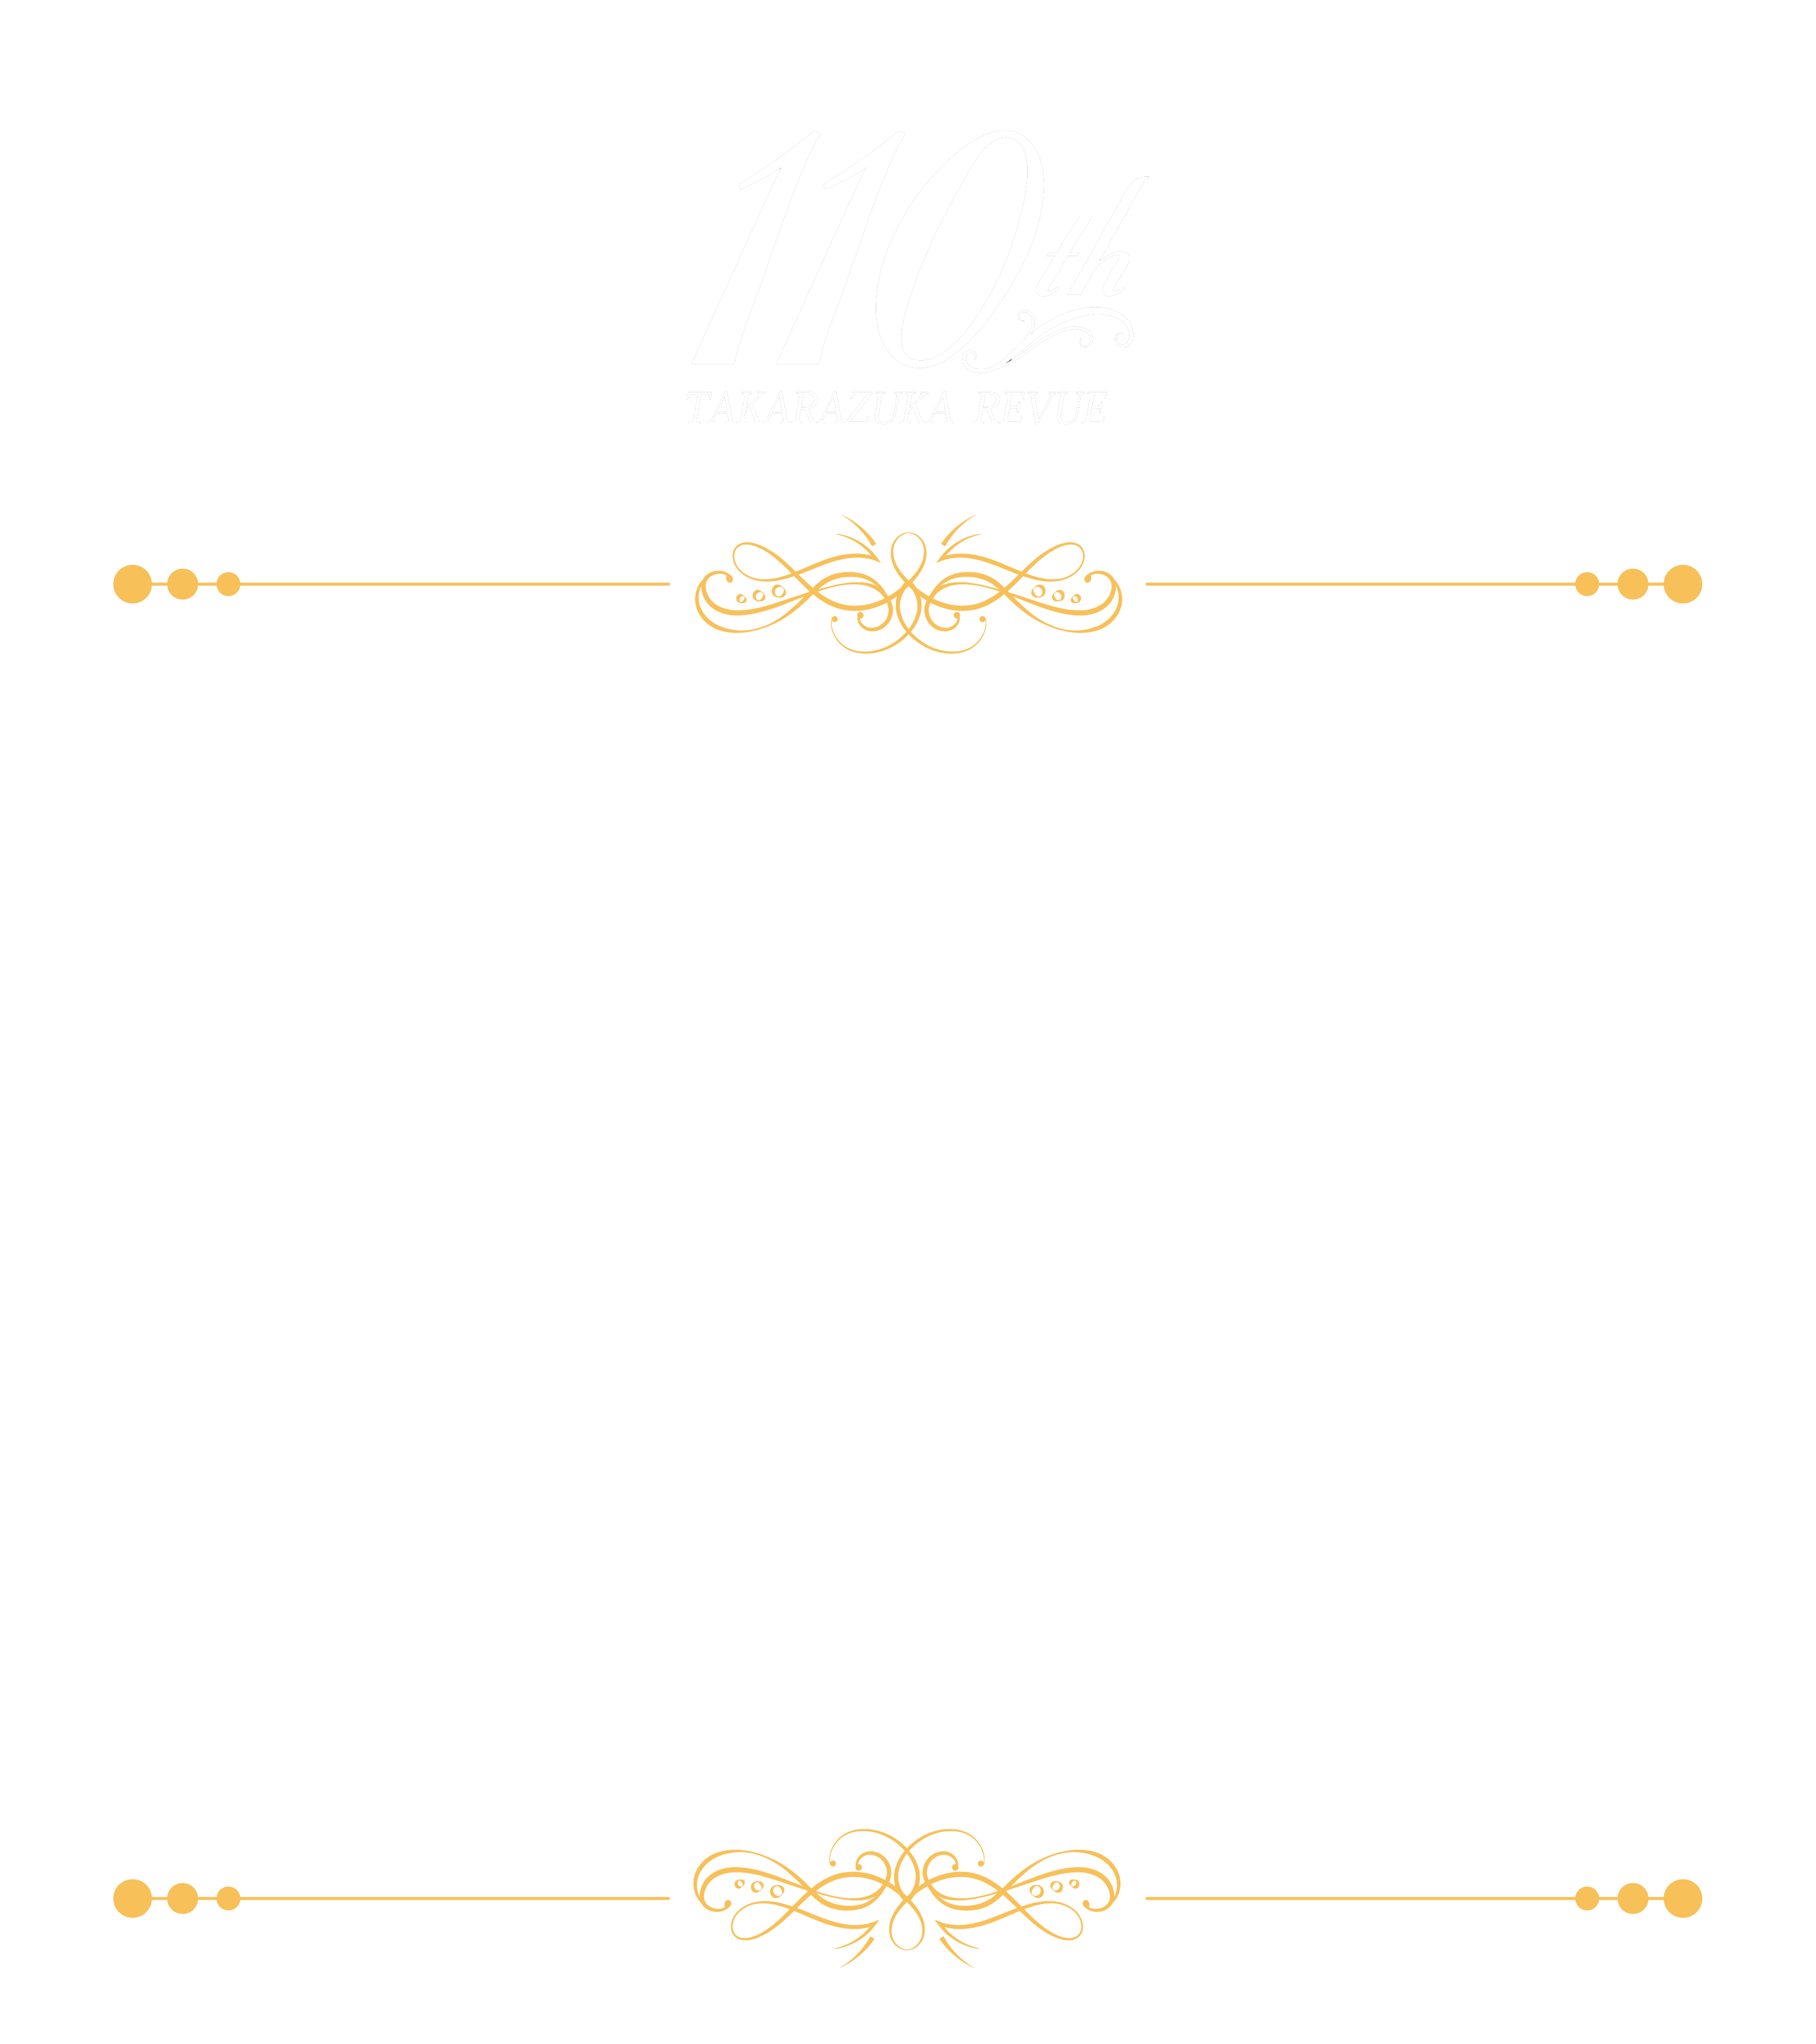 『Eternal Voice 消え残る想い』ロゴ